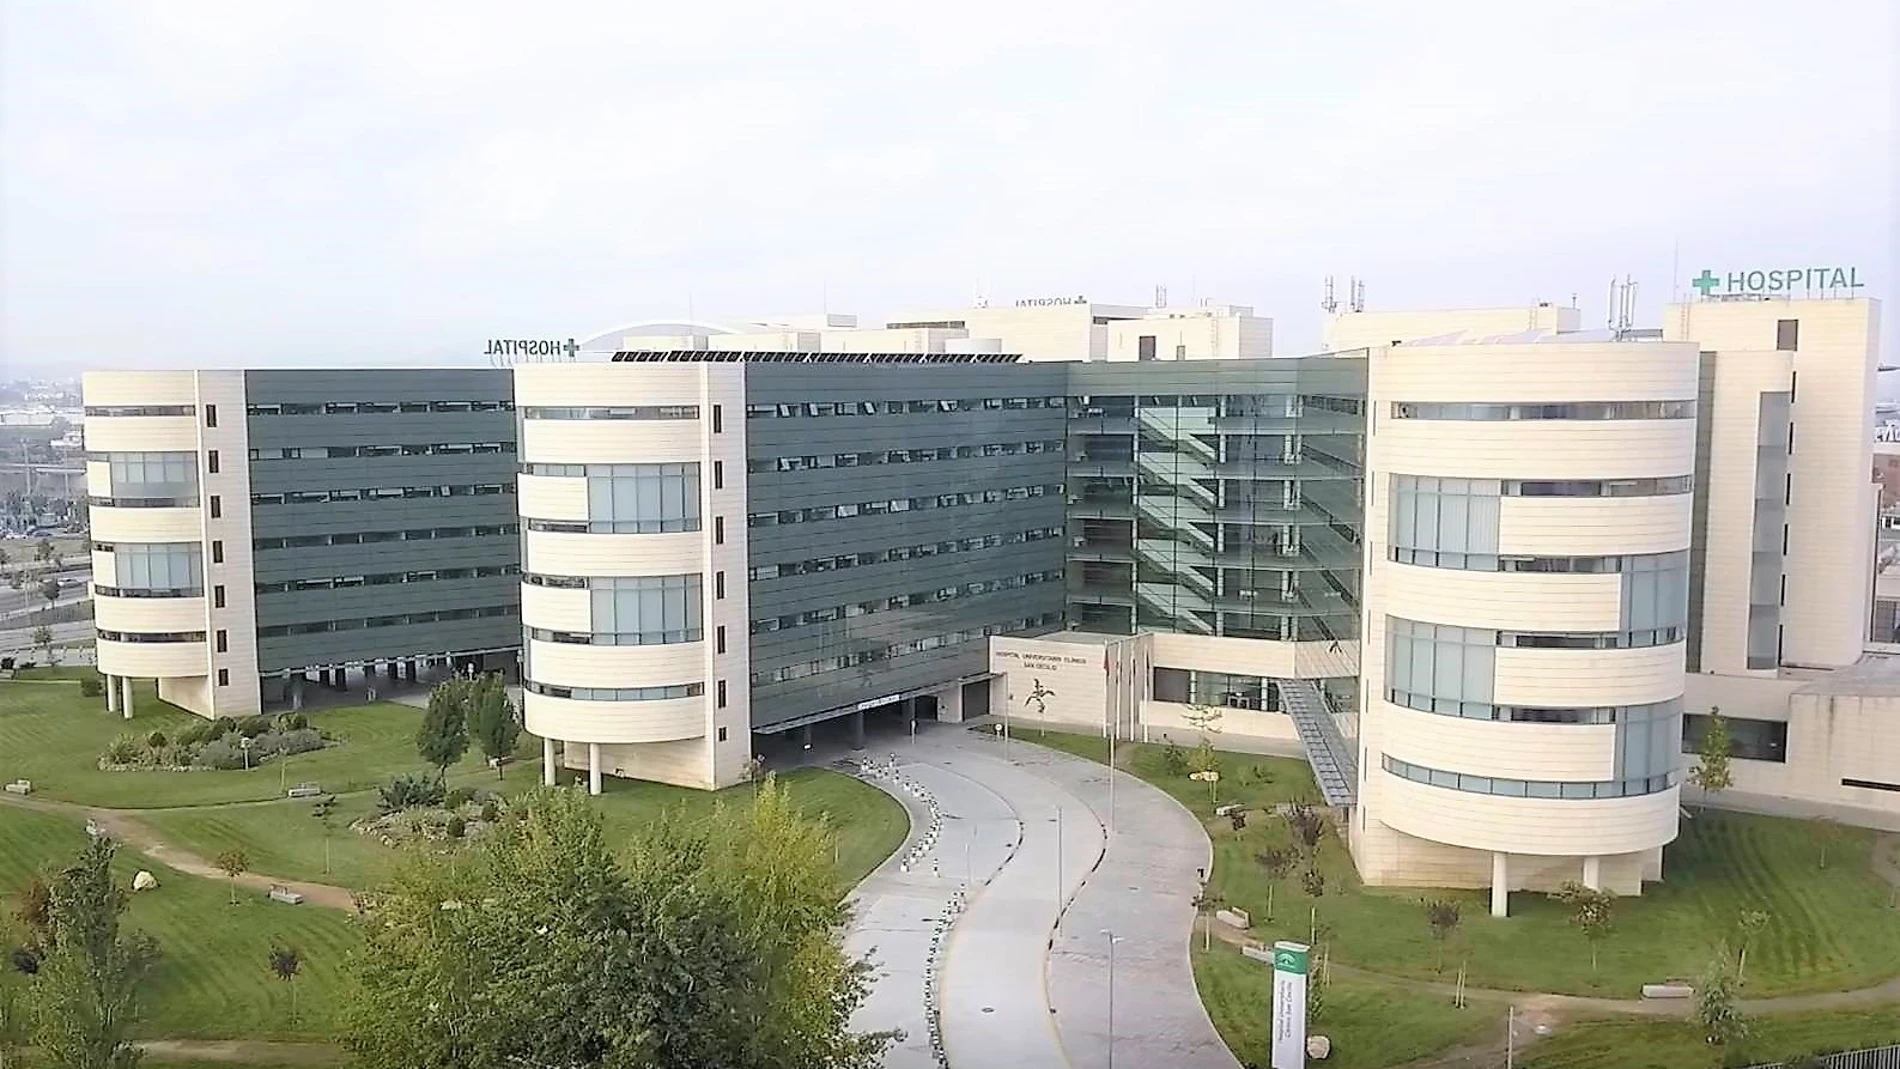 Vista exterior del hospital Clínico San Cecilio, en el campus de la Salud de Granada